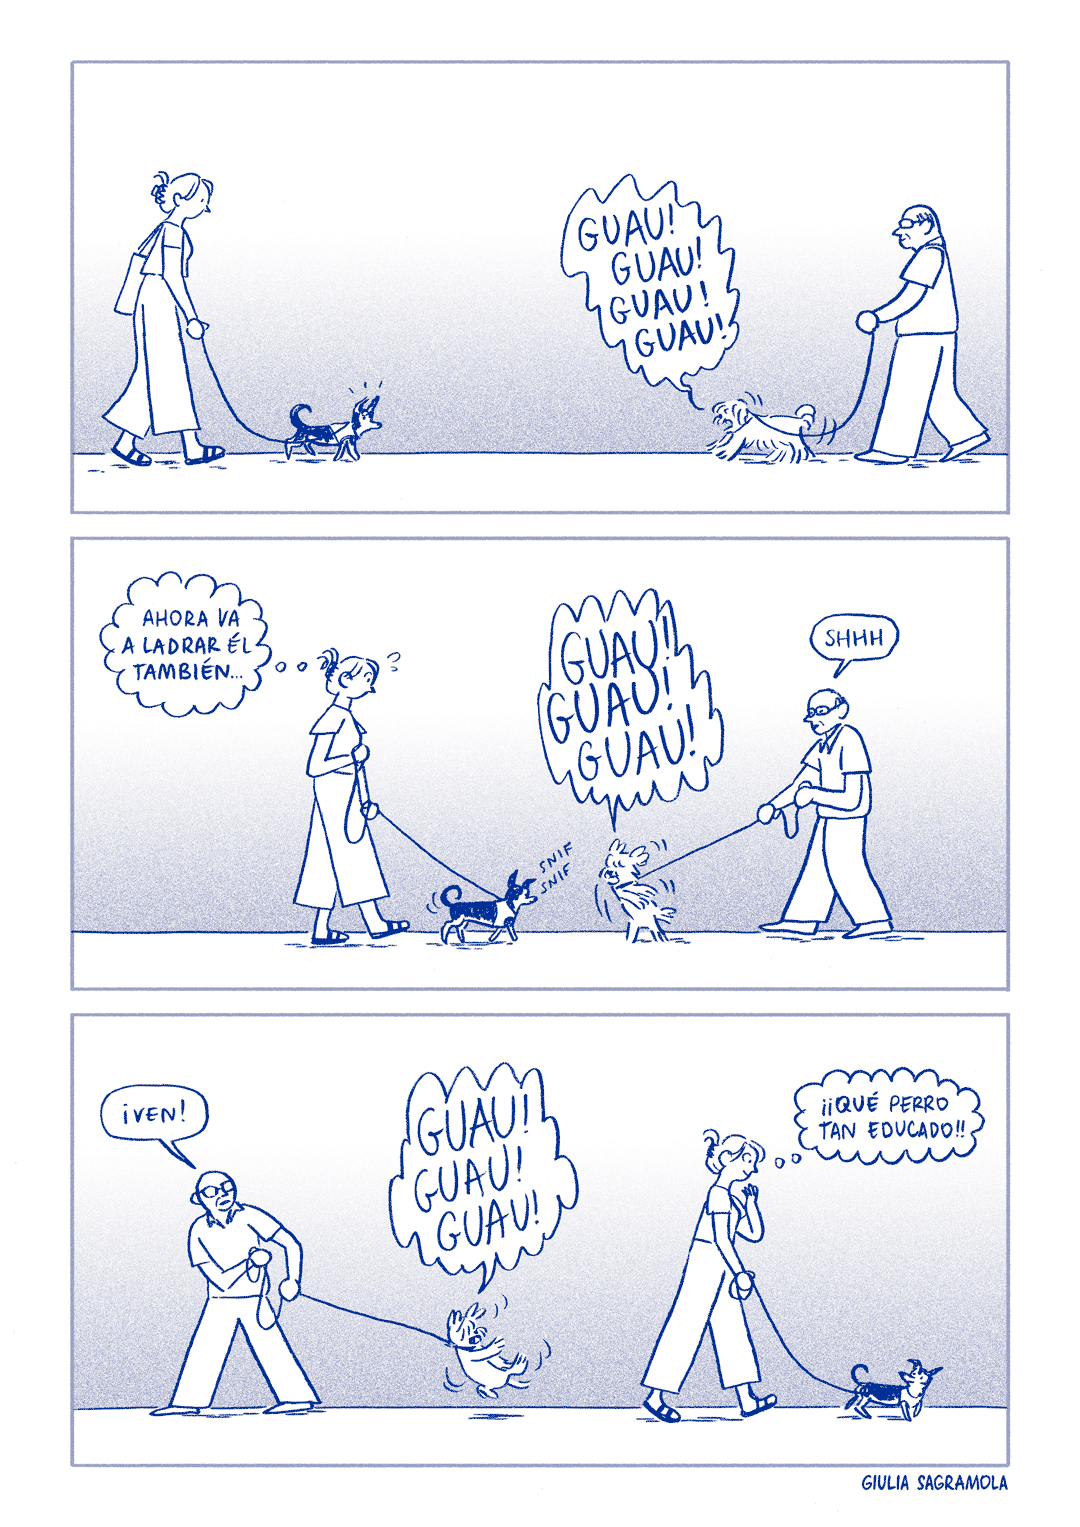 una striscia a fumetti in cui Pippin incontra un altro cane e non gli abbaia